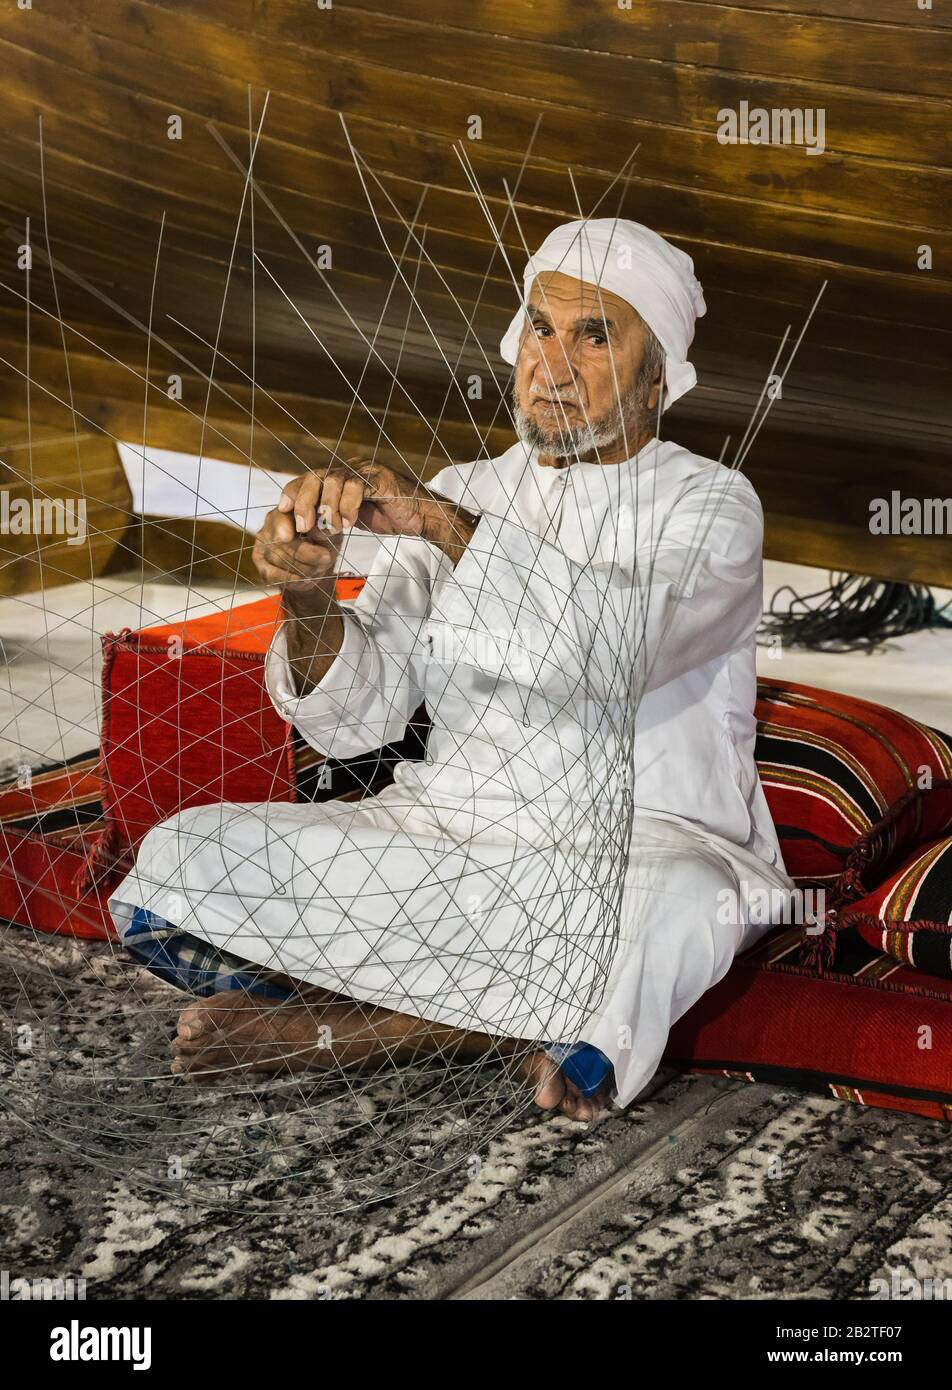 Dubaï, Émirats arabes Unis - 4 DÉCEMBRE 2017: Le vieil homme est en tissage un filet de pêche pour rencontrer des invités dans le pavillon des Émirats arabes Unis, Global Village Banque D'Images